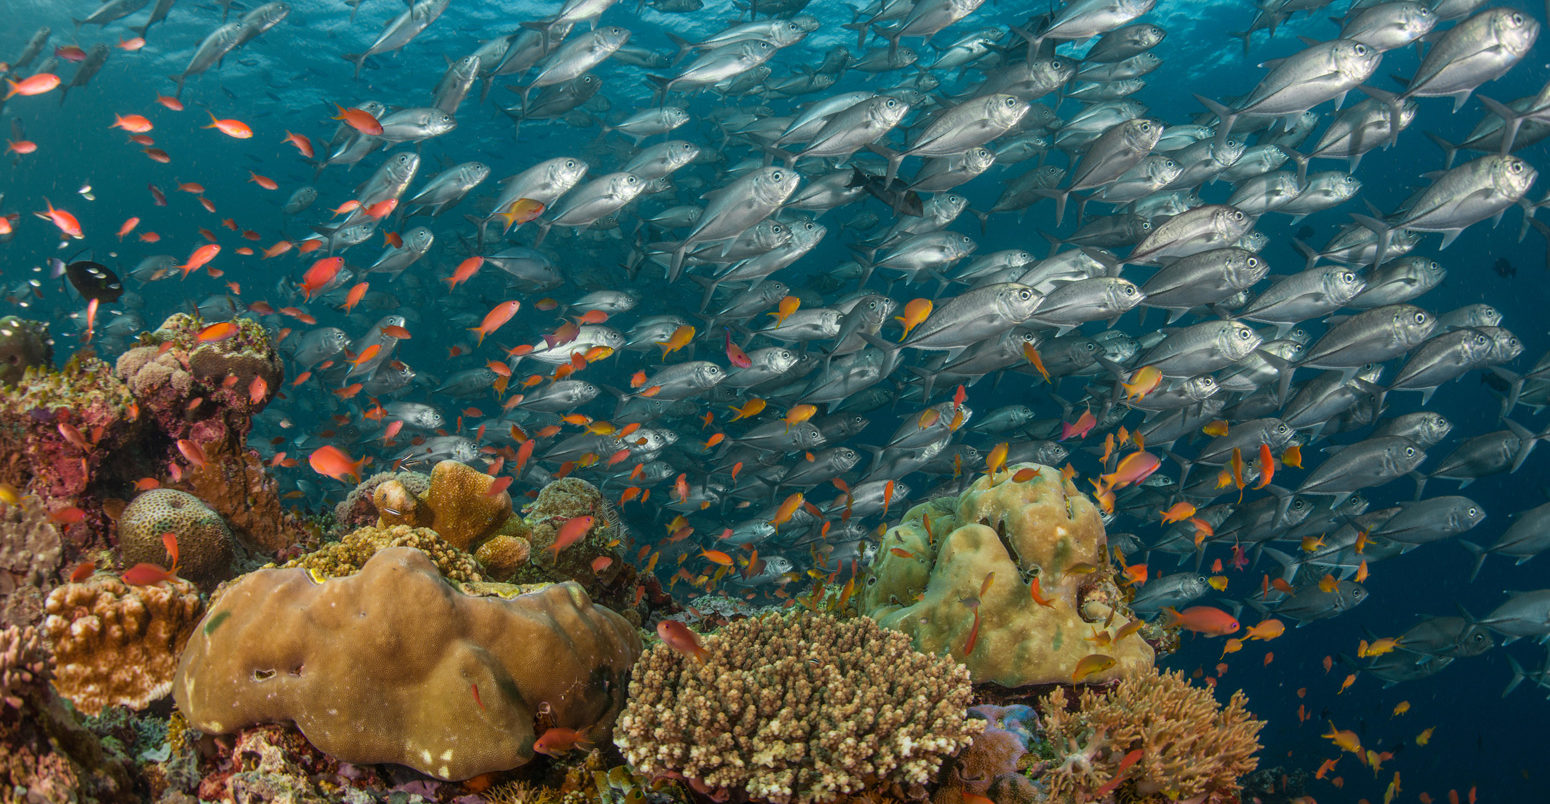 马来西亚籍婆罗洲沙巴州的一群大眼鱼、珊瑚礁鱼和橘花鱼。资料来源:Christian Loader / Alamy Stock Photo